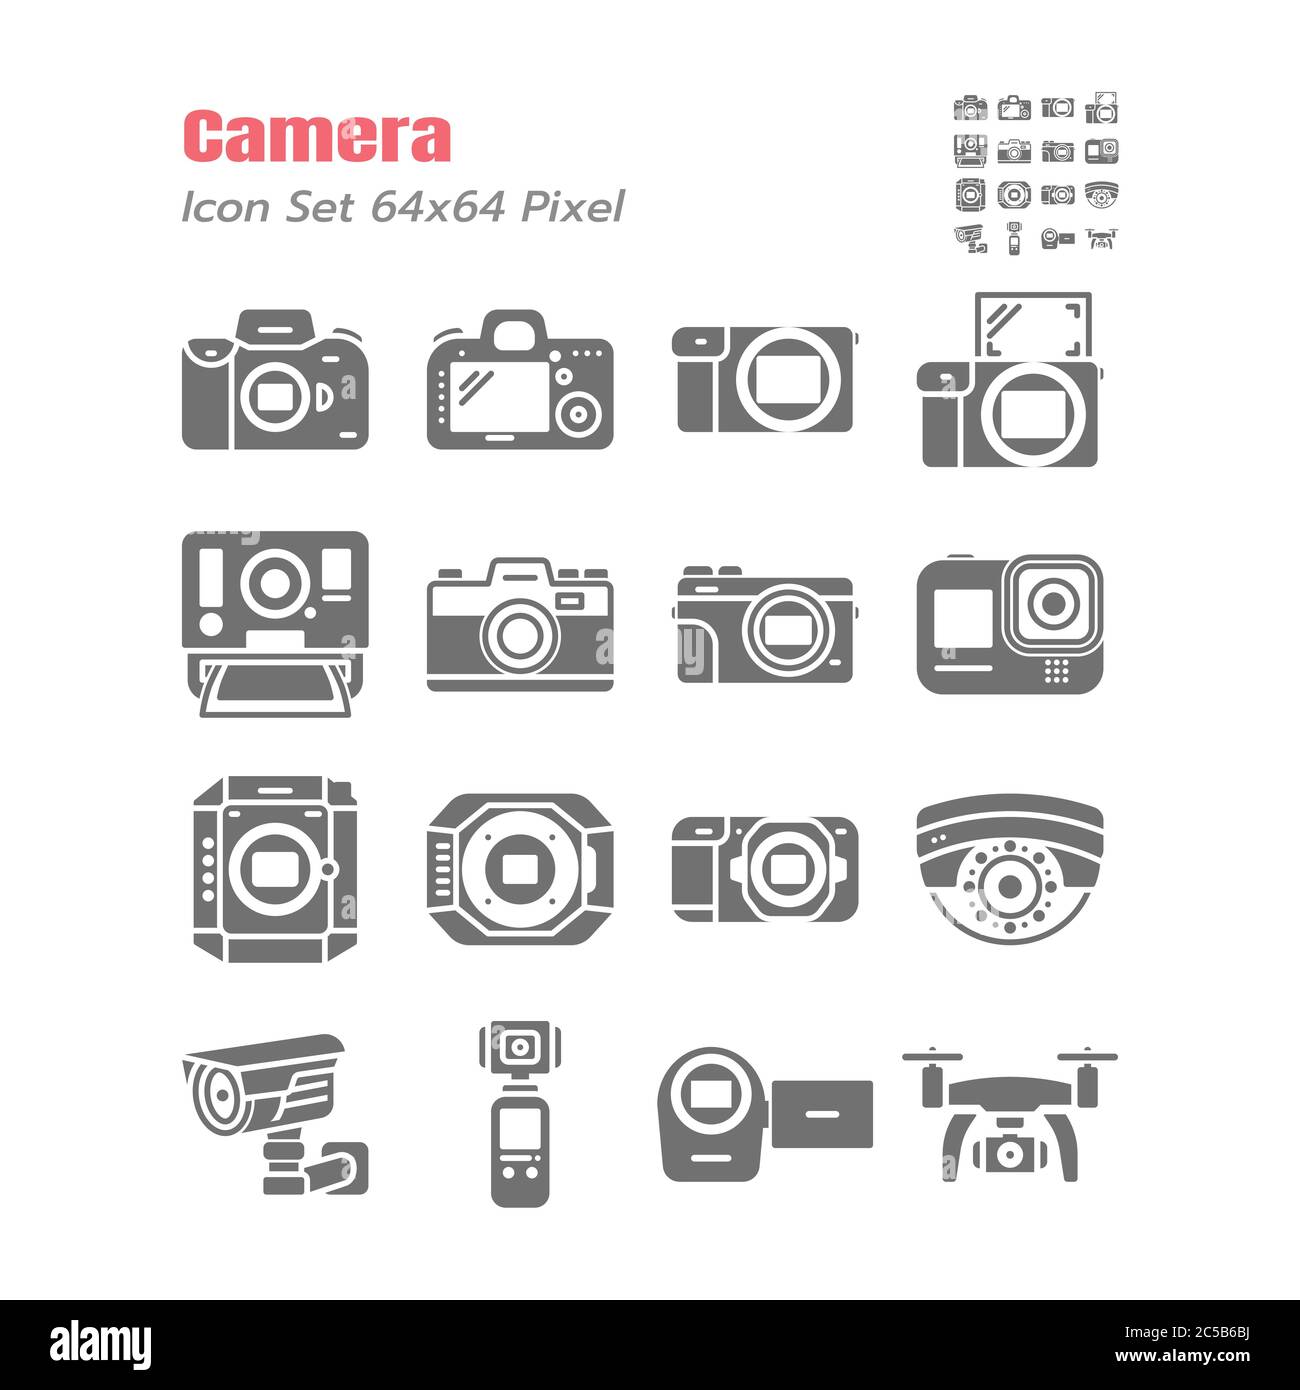 Semplice set di icone di glifo solido vettoriale della fotocamera, come DSLR, Mirrorless, Instant, Action Cam, Film, Compact, Drone, Fotografia, Cinematografia, Digit Illustrazione Vettoriale